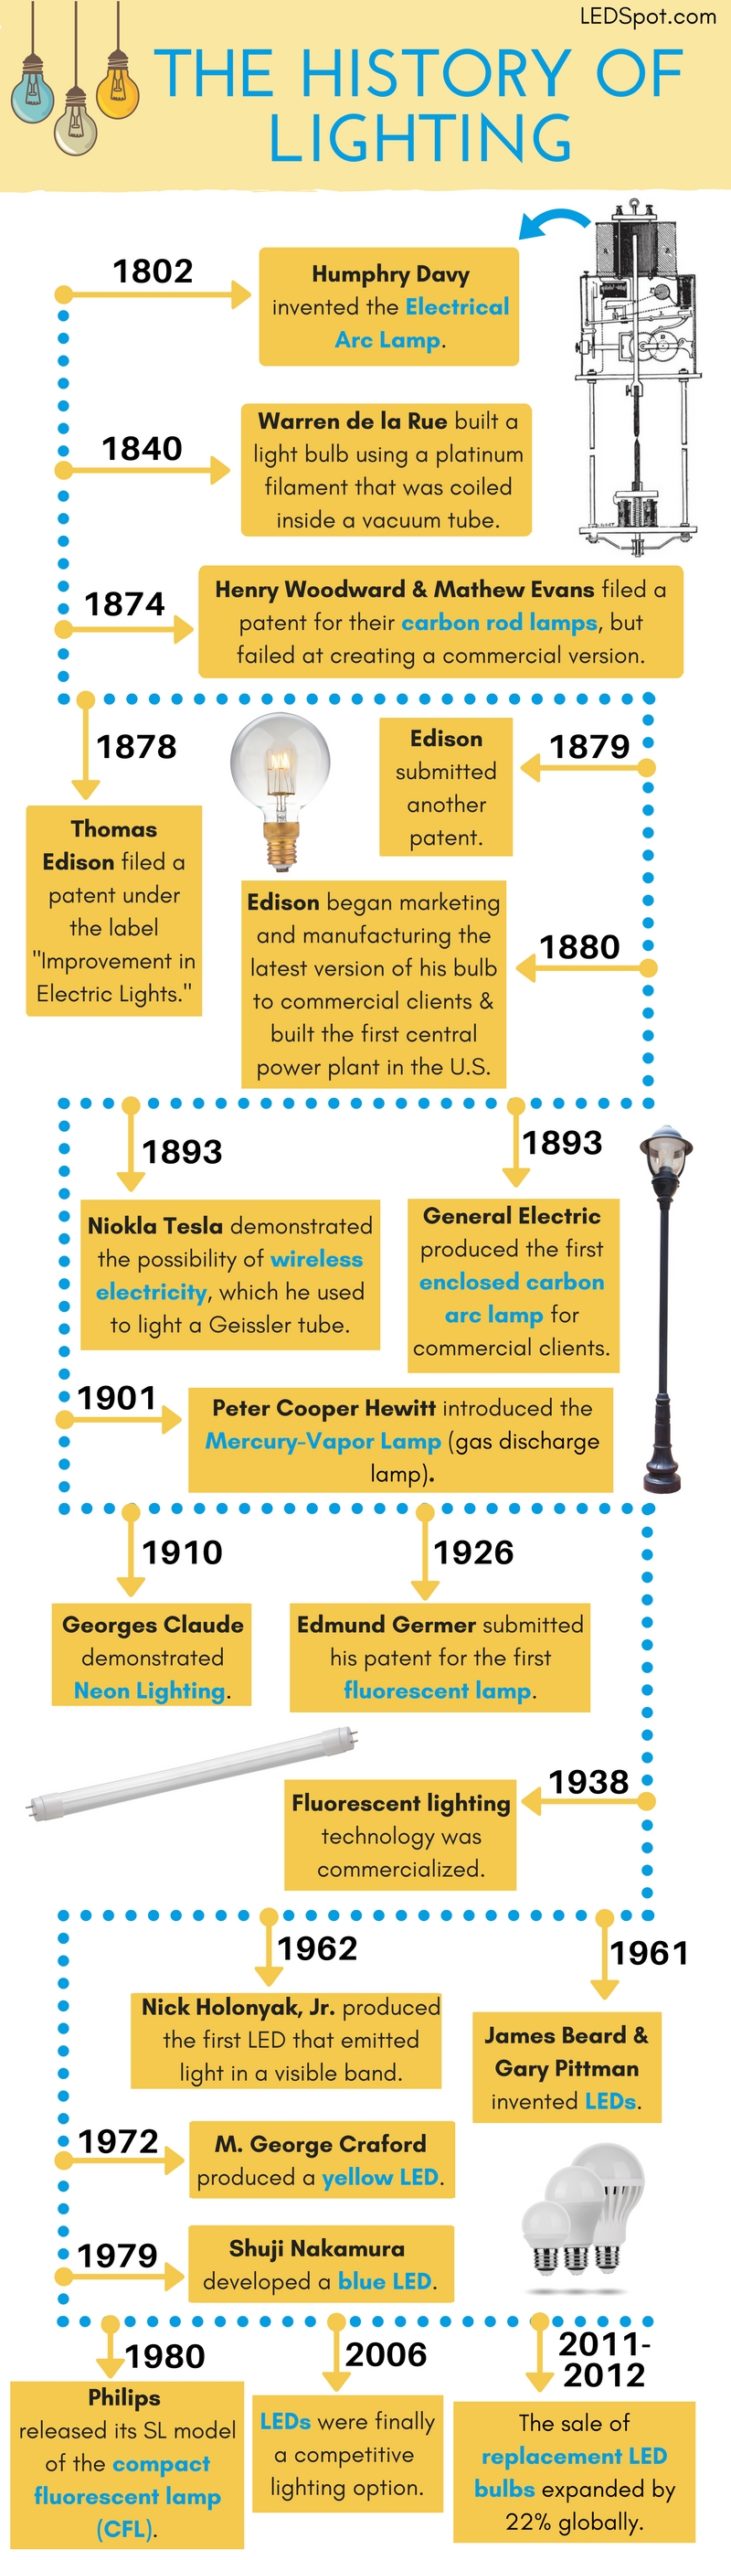 Commercial Lighting Explained Lighting History Ledspot